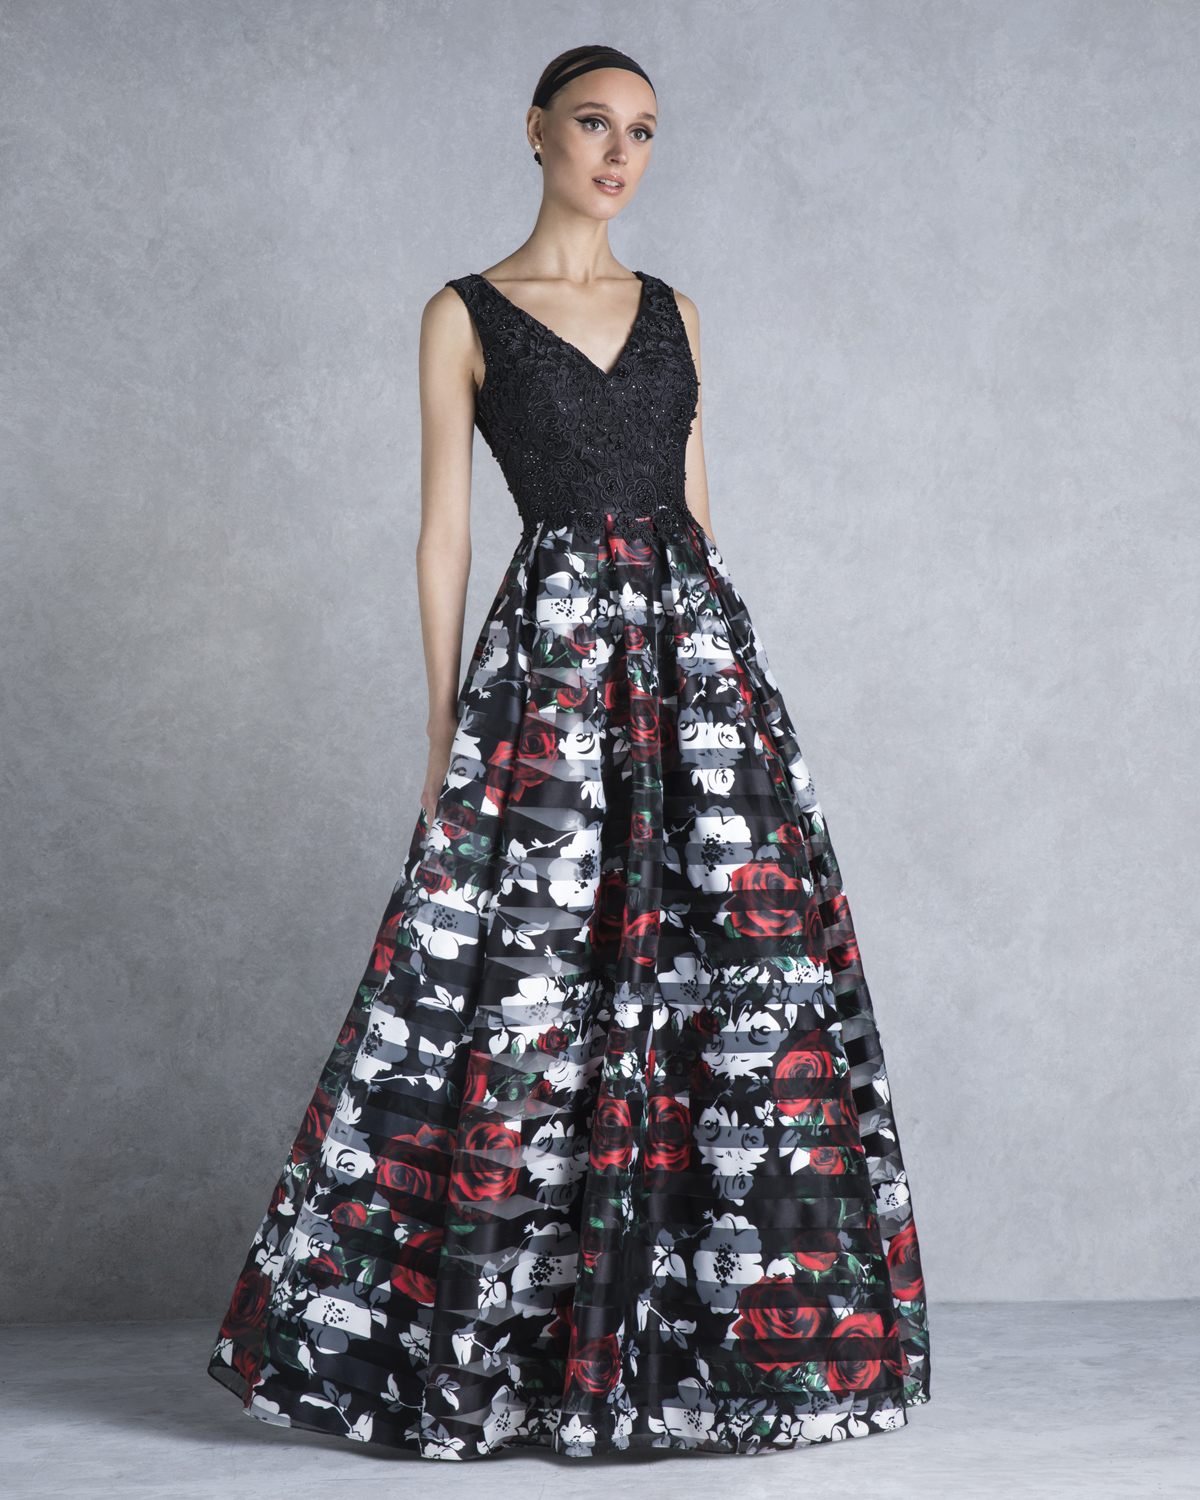 Коктейльные платья / Evening printed dress with lace top